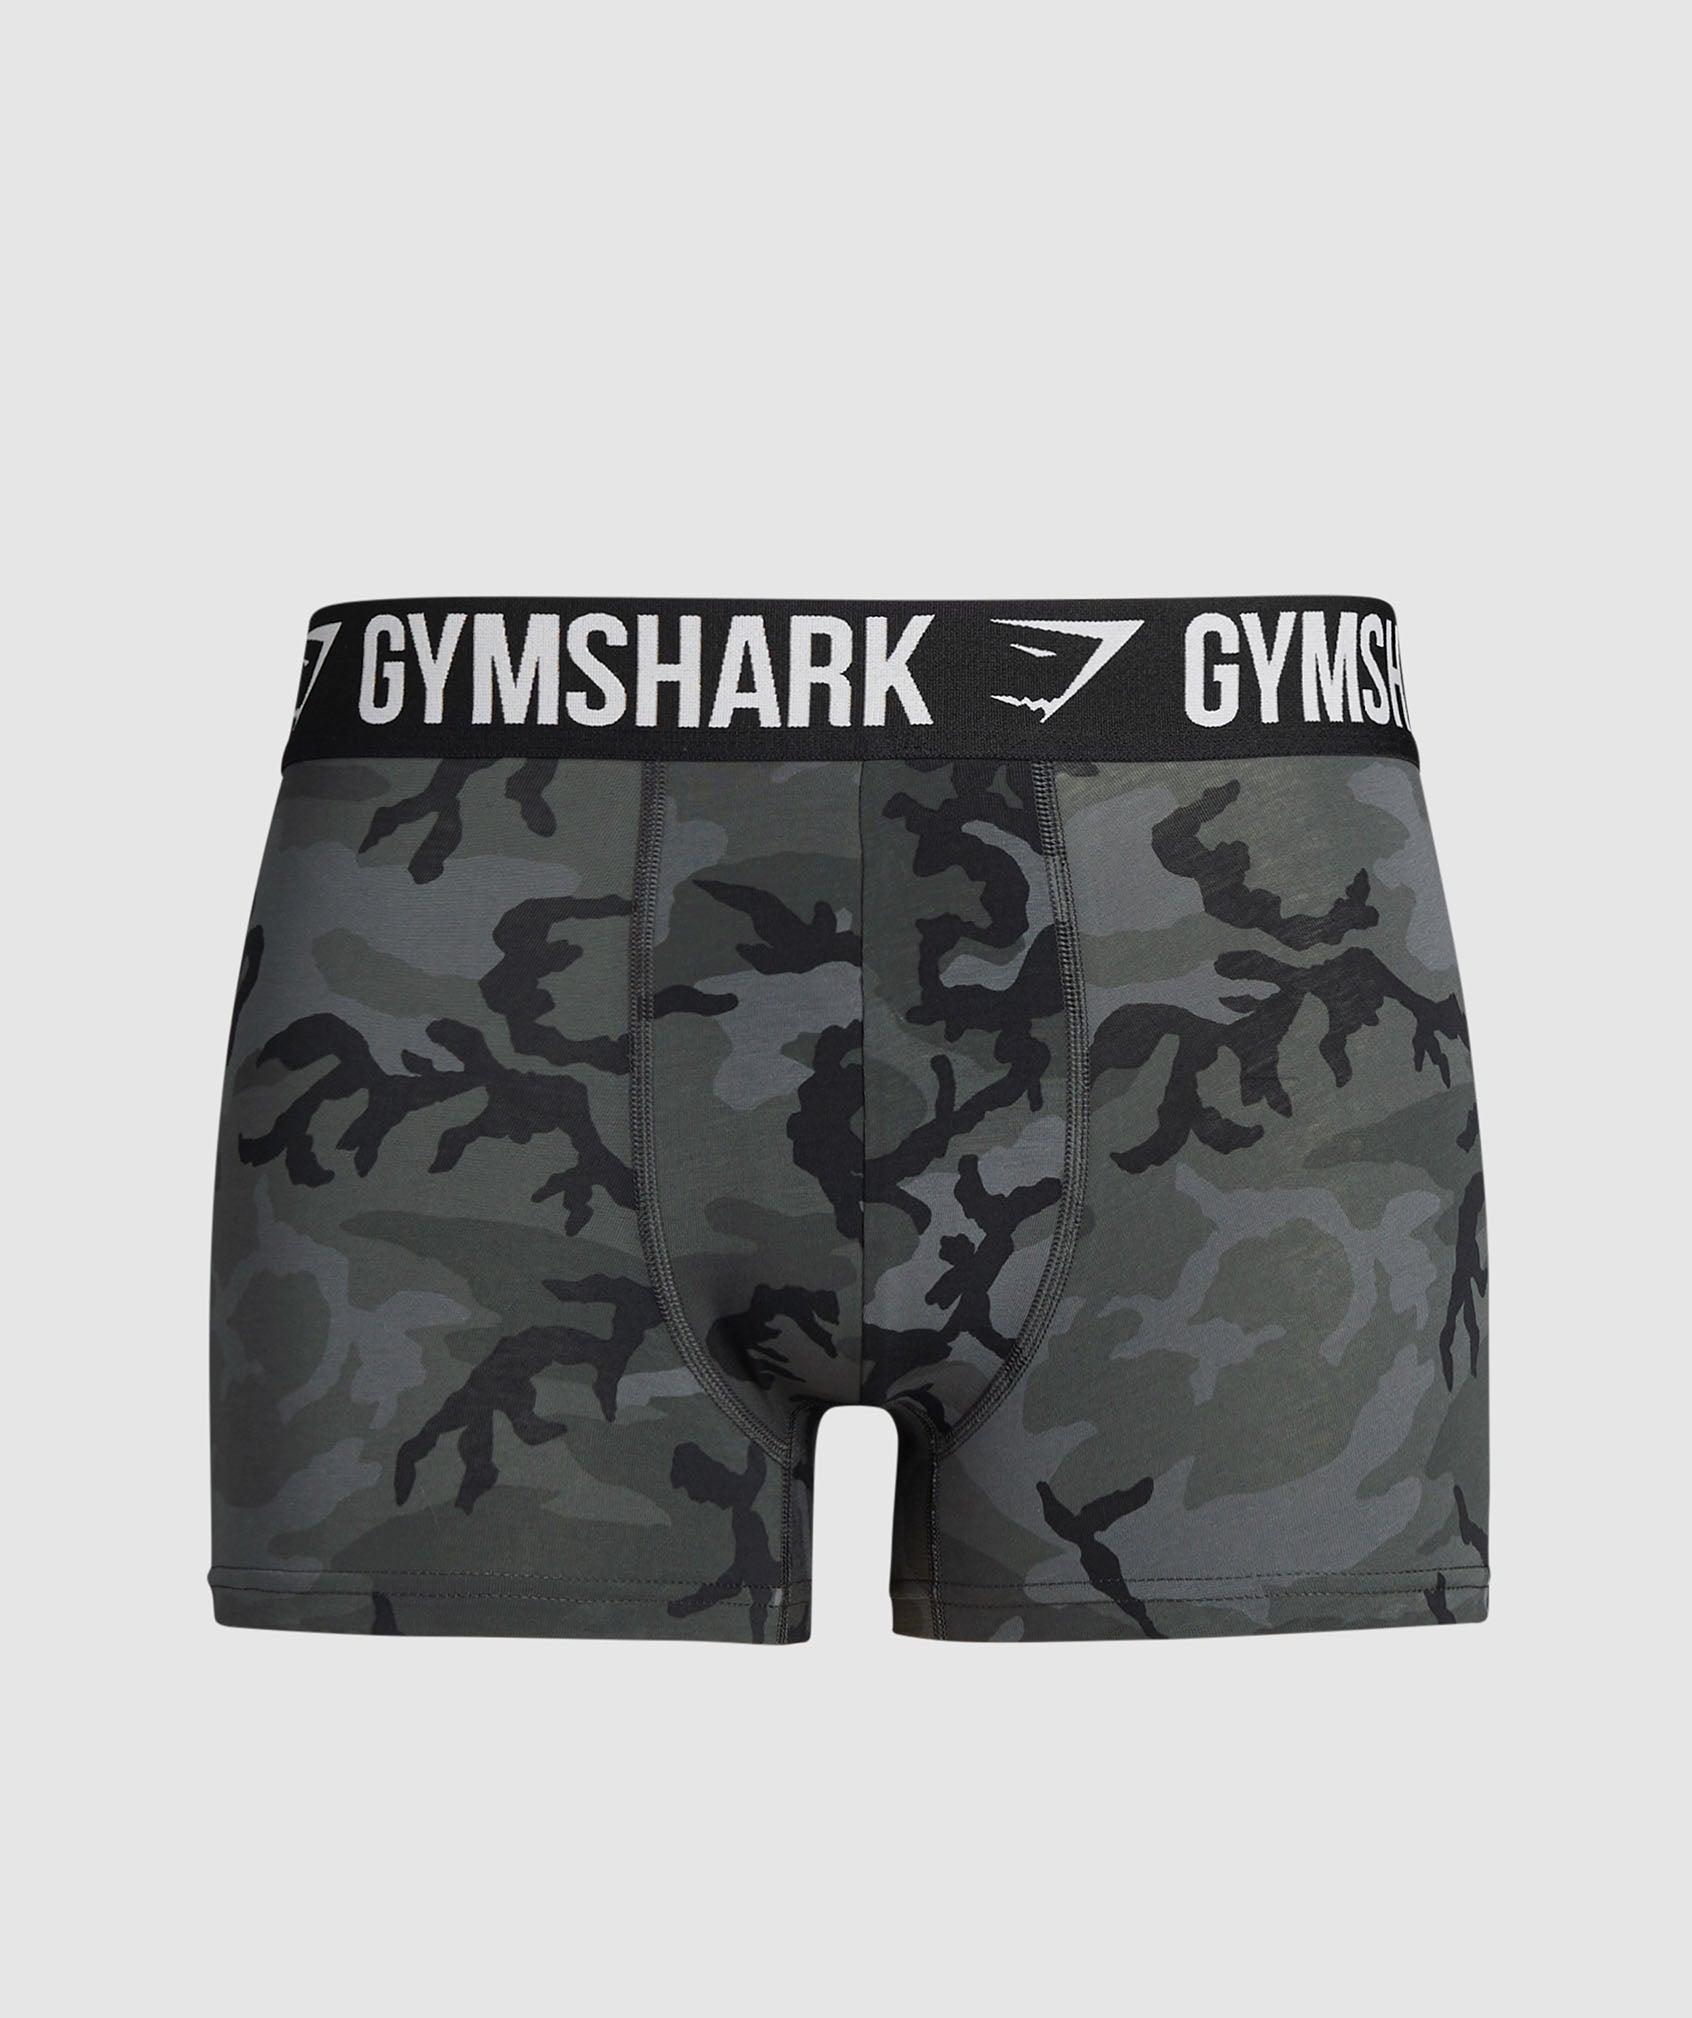 Gymshark Hybrid Boxer - Black/Light Grey